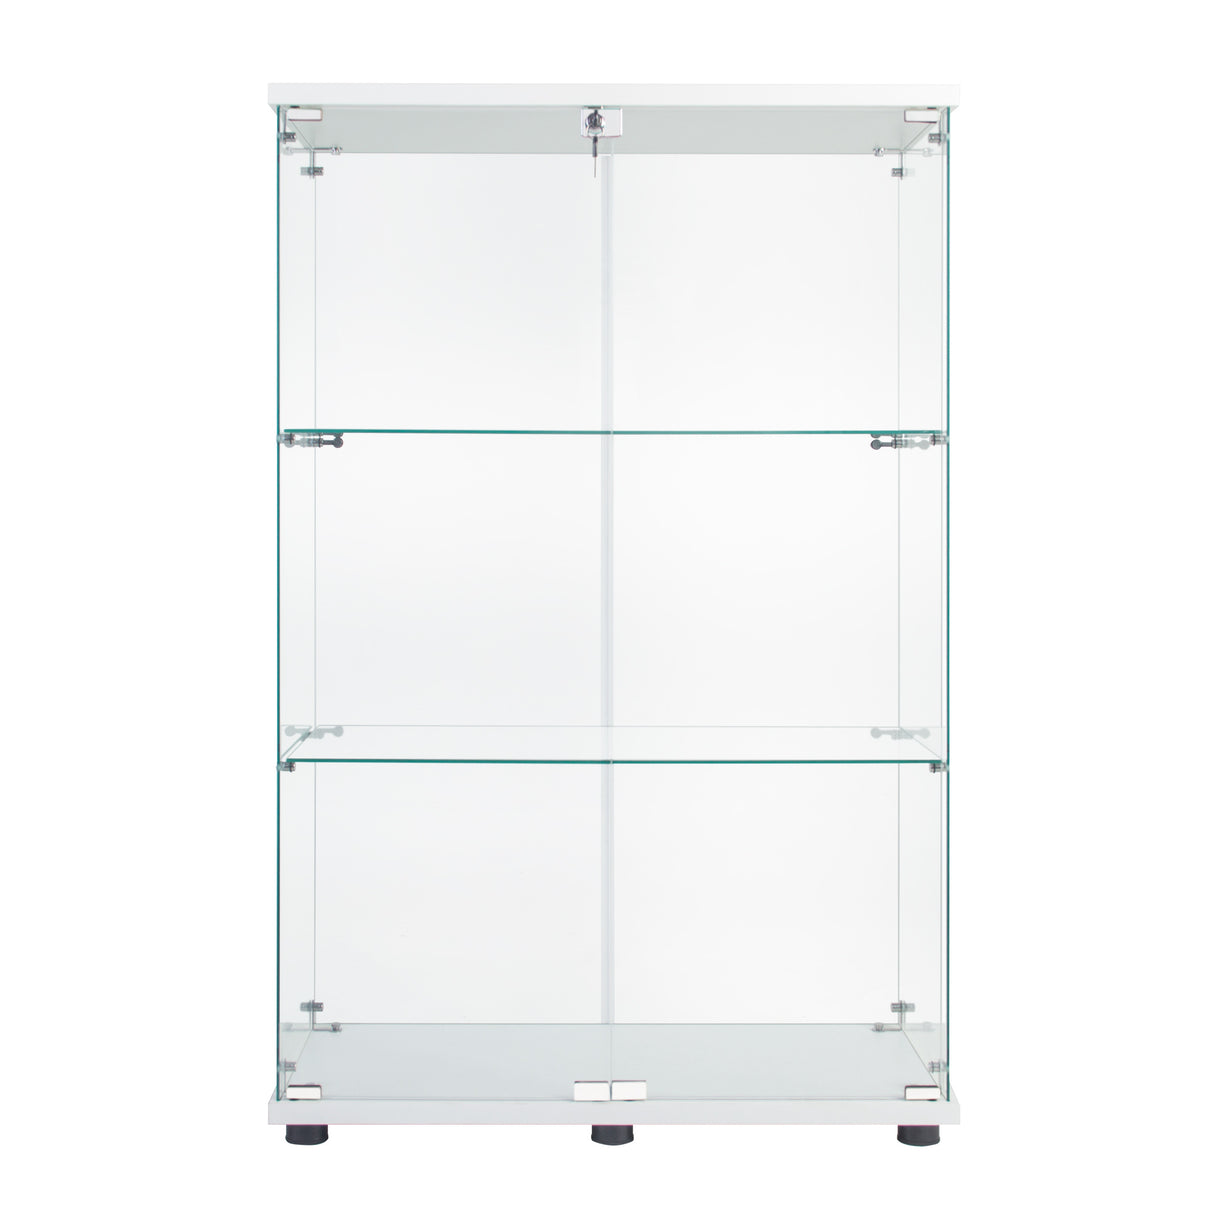 Two-door Glass Display Cabinet 3 Shelves with Door, Floor Standing Curio Bookshelf for Living Room Bedroom Office, 49.49” x 31.77”x 14.37”, White Home Elegance USA